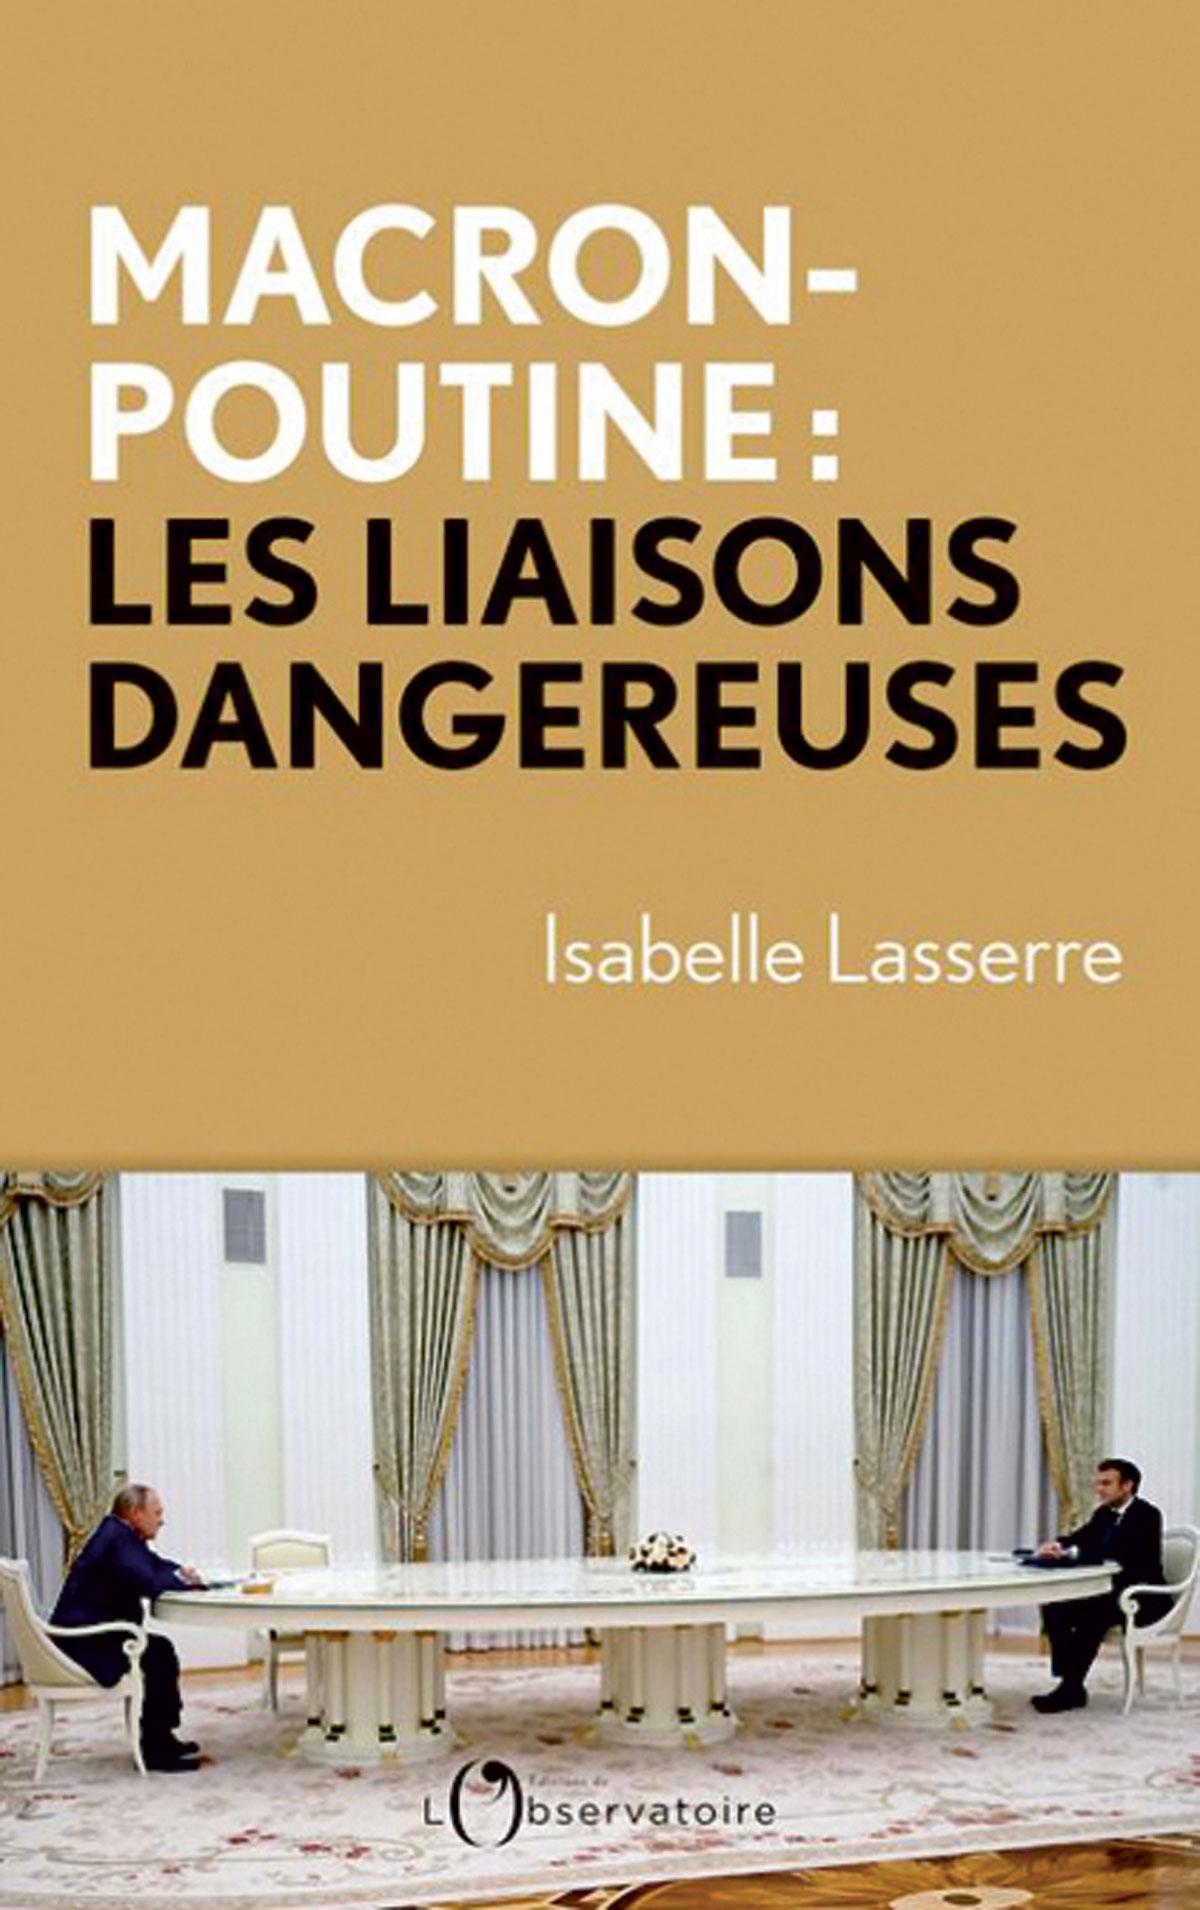 (1) Macron-Poutine: les liaisons dangereuses, par Isabelle Lasserre, L’Observatoire, 190 p.